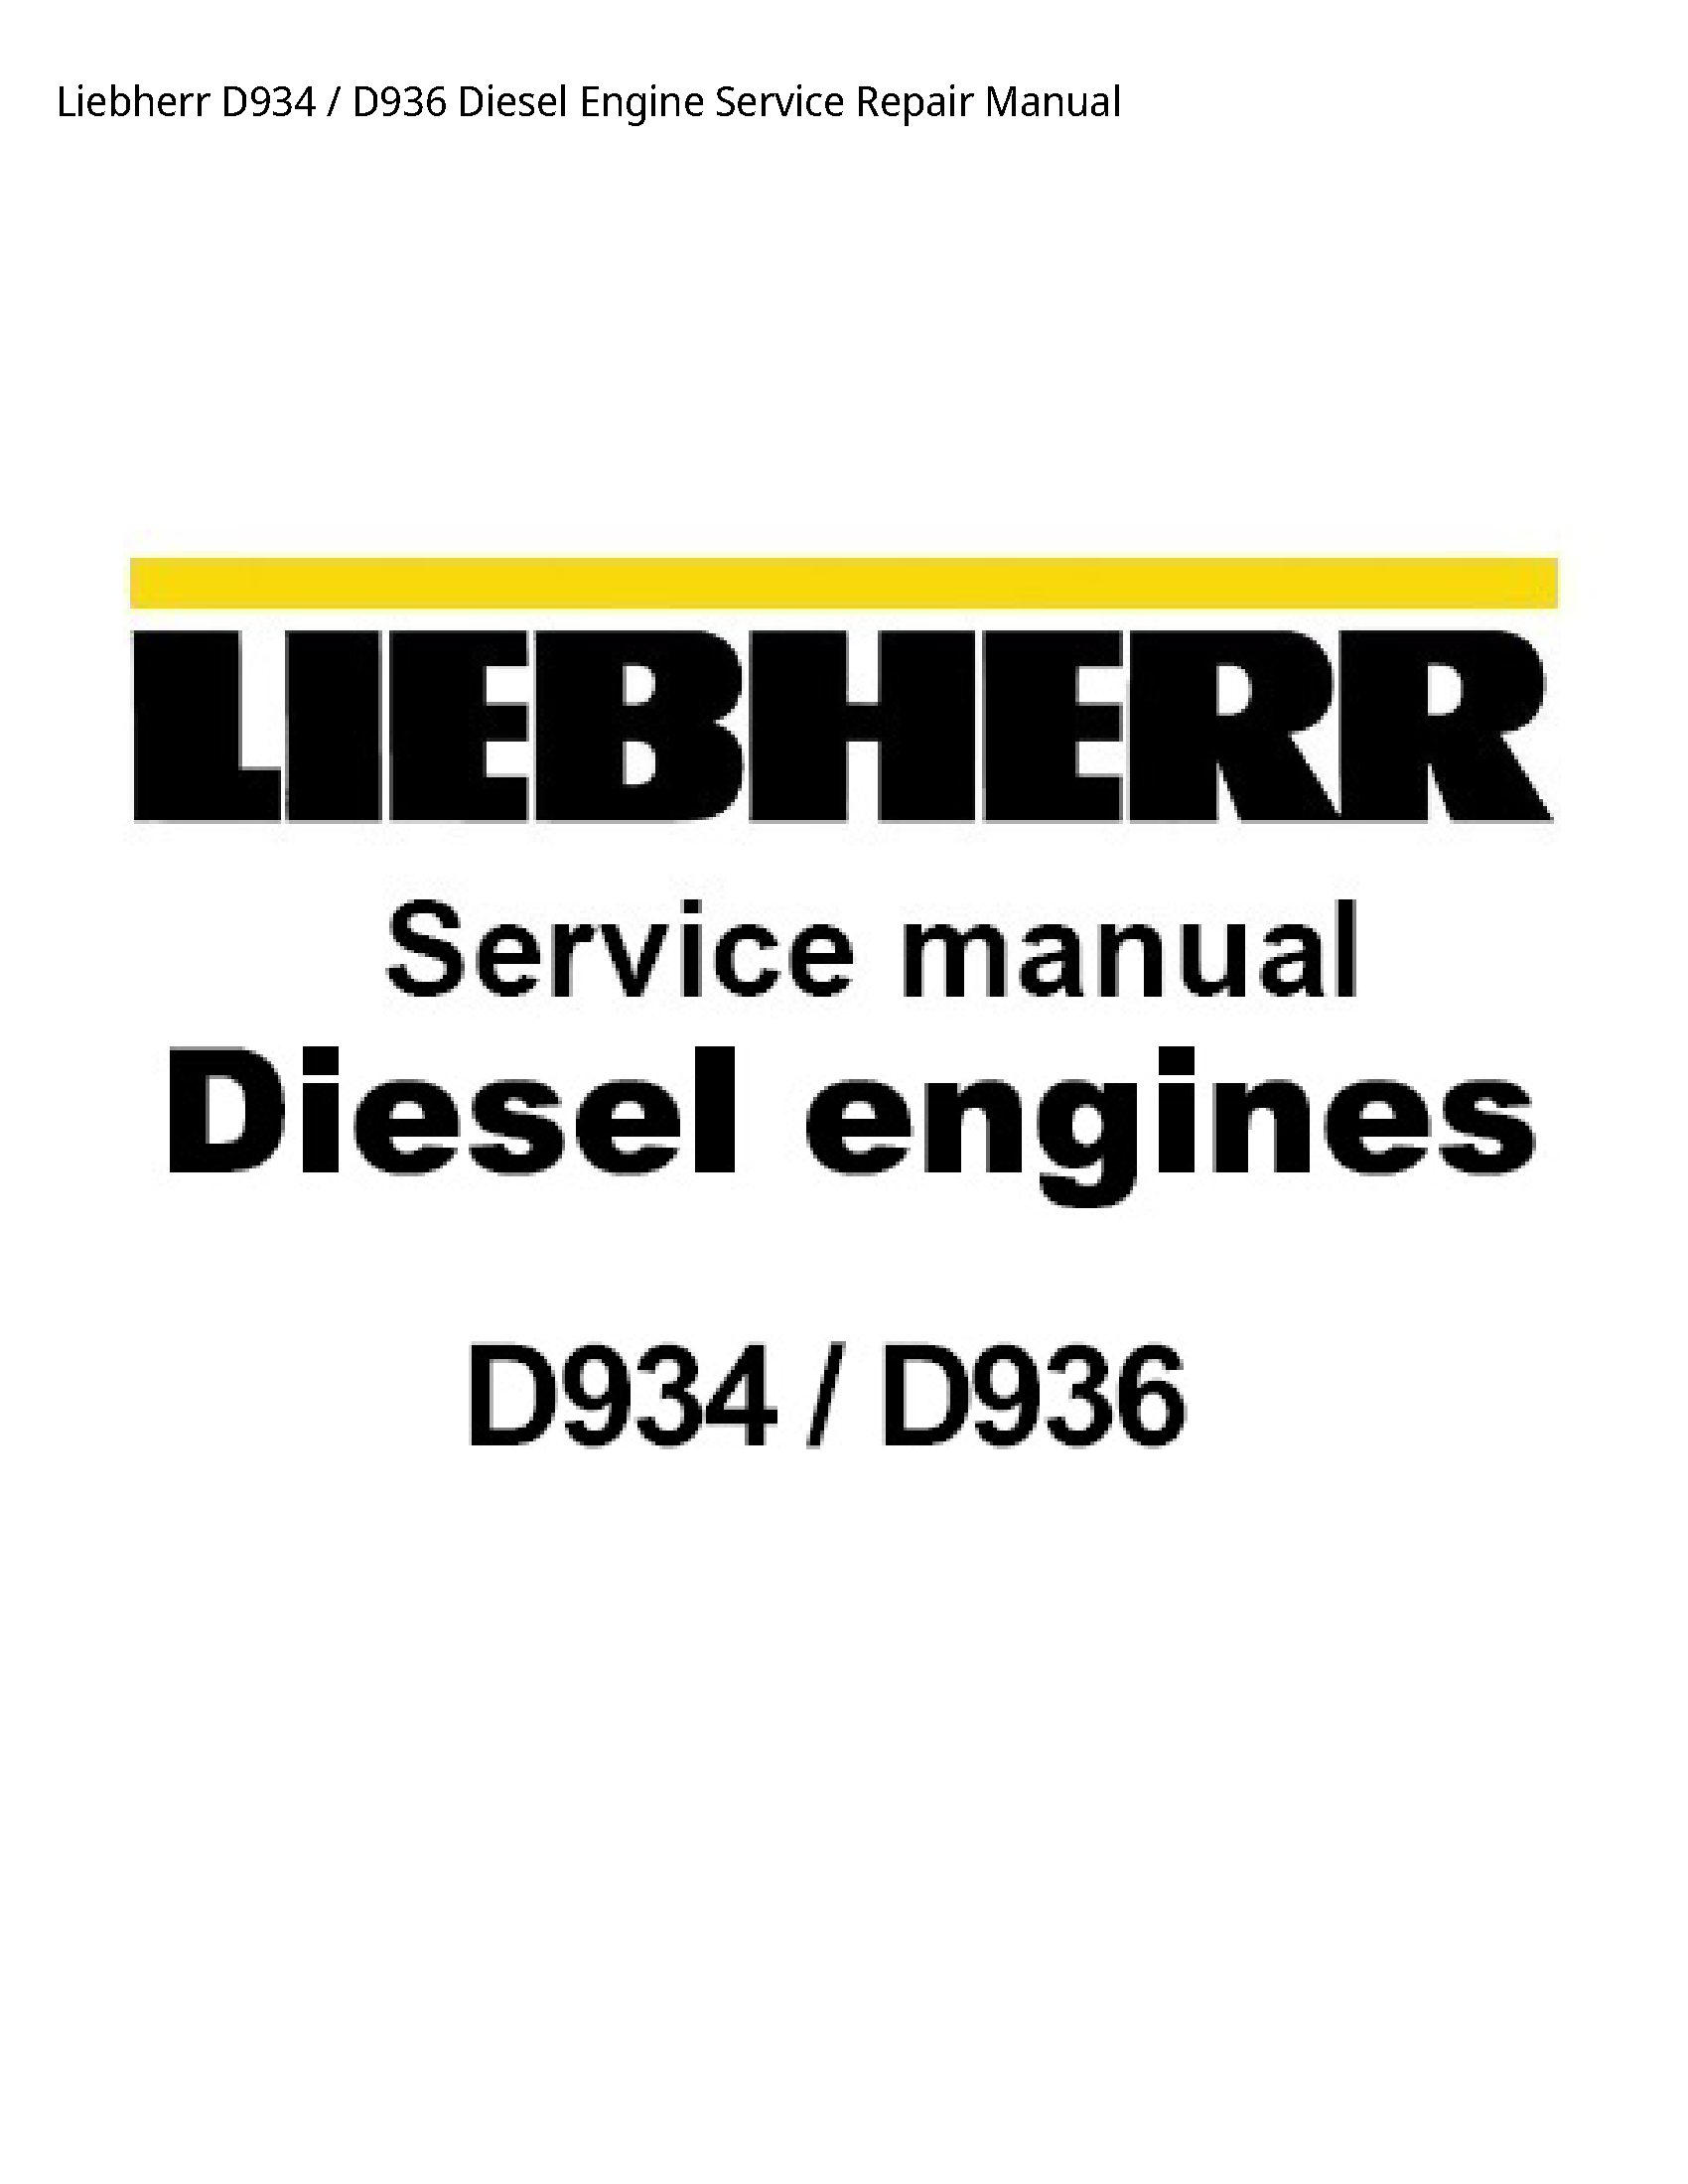 Liebherr D934 Diesel Engine manual